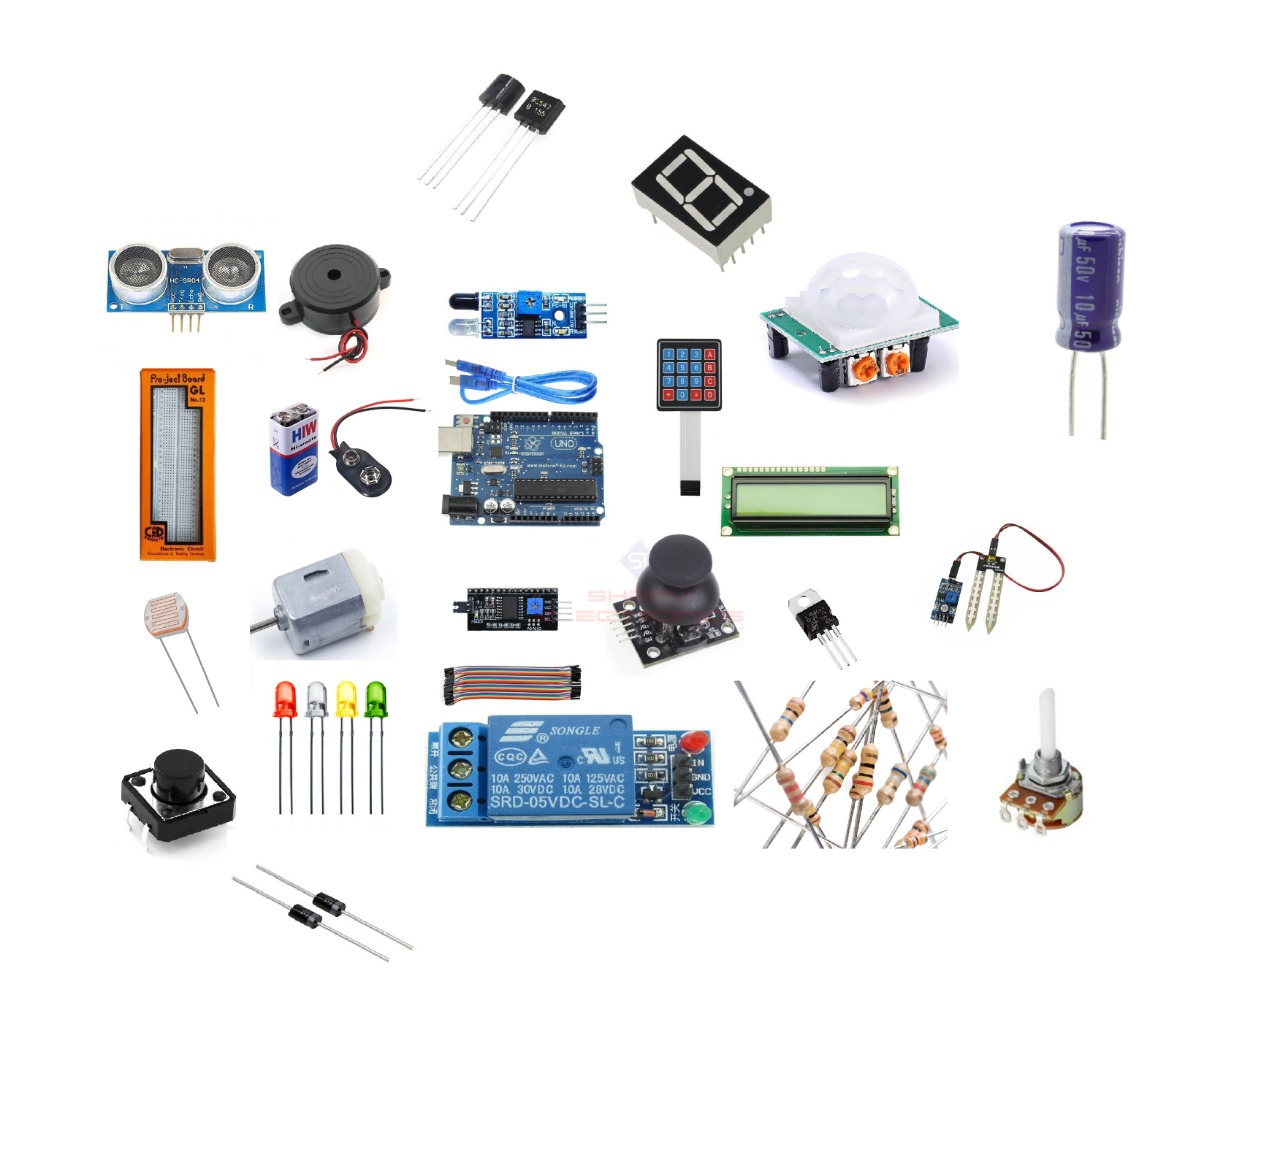 https://sharvielectronics.com/wp-content/uploads/2020/04/Arduino-Starter-kit-for-beginner-v1.2-1.jpeg